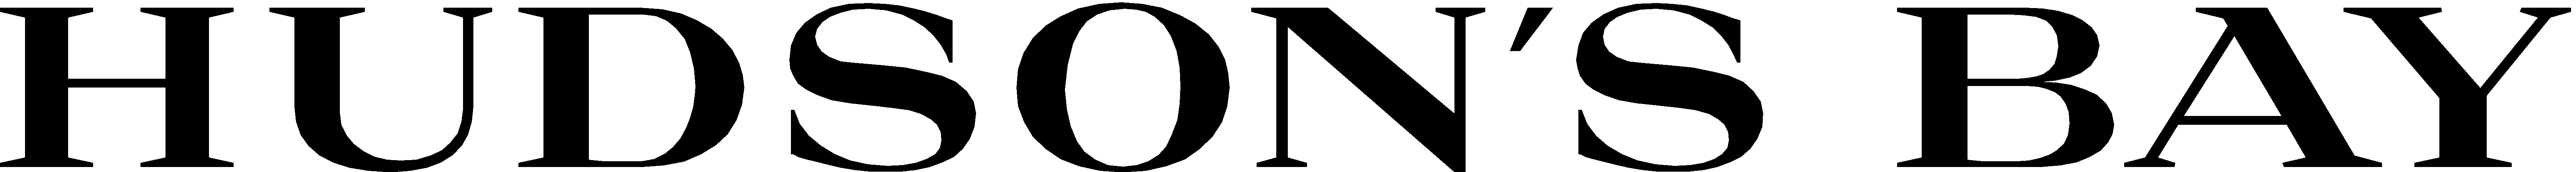 [Retail] - Hudson's Bay Logo